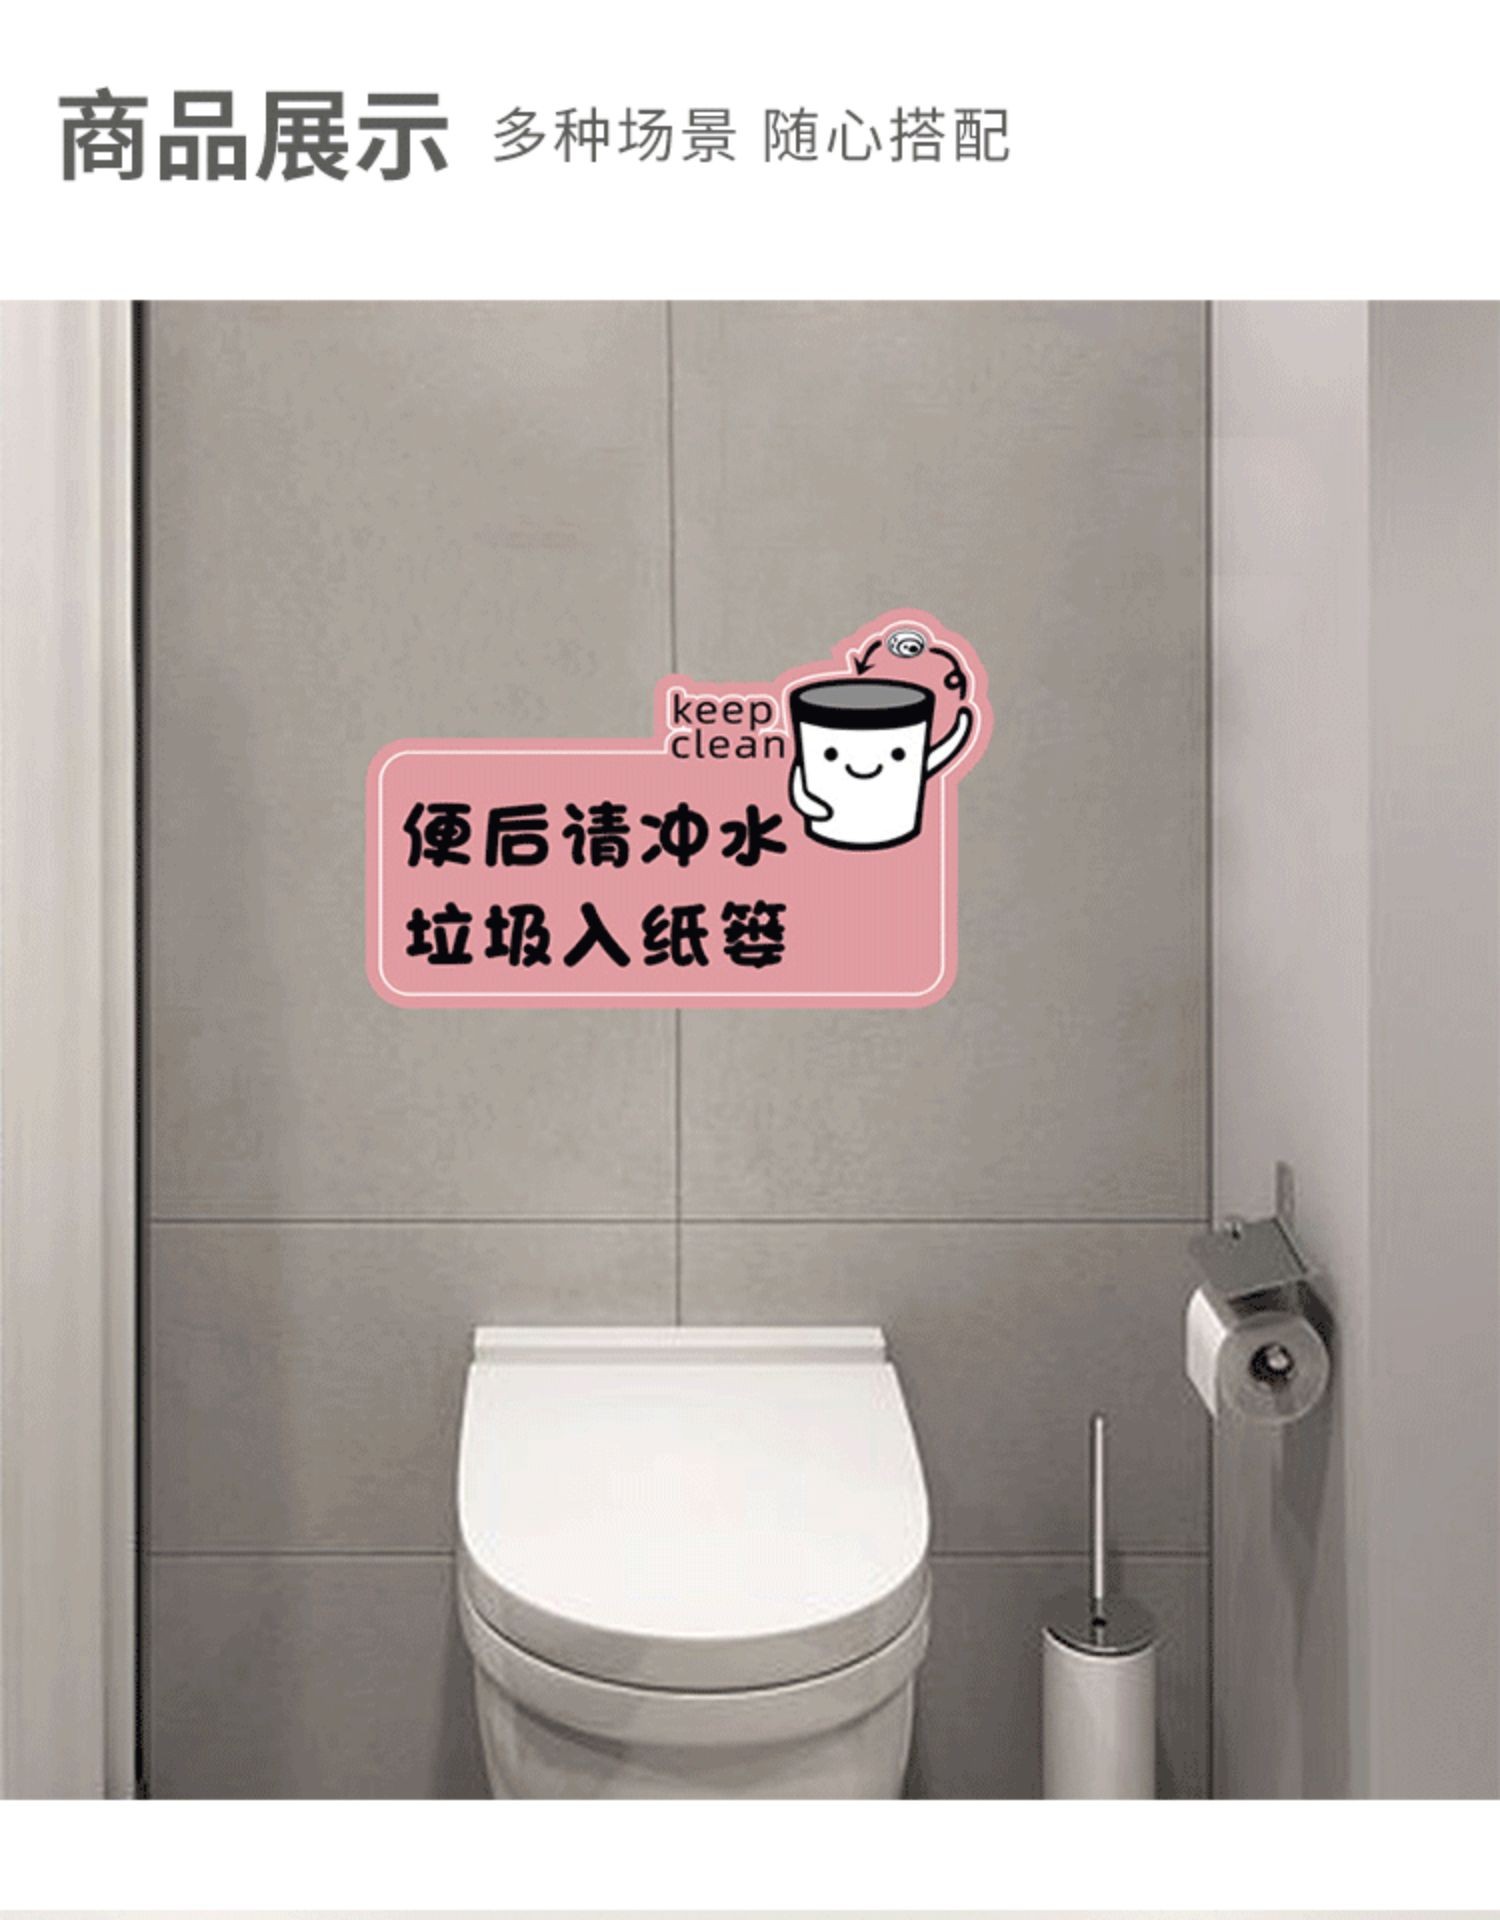 quanshe学校幼儿园卫生间贴纸公共厕所洗手间节约用纸温馨提示标语